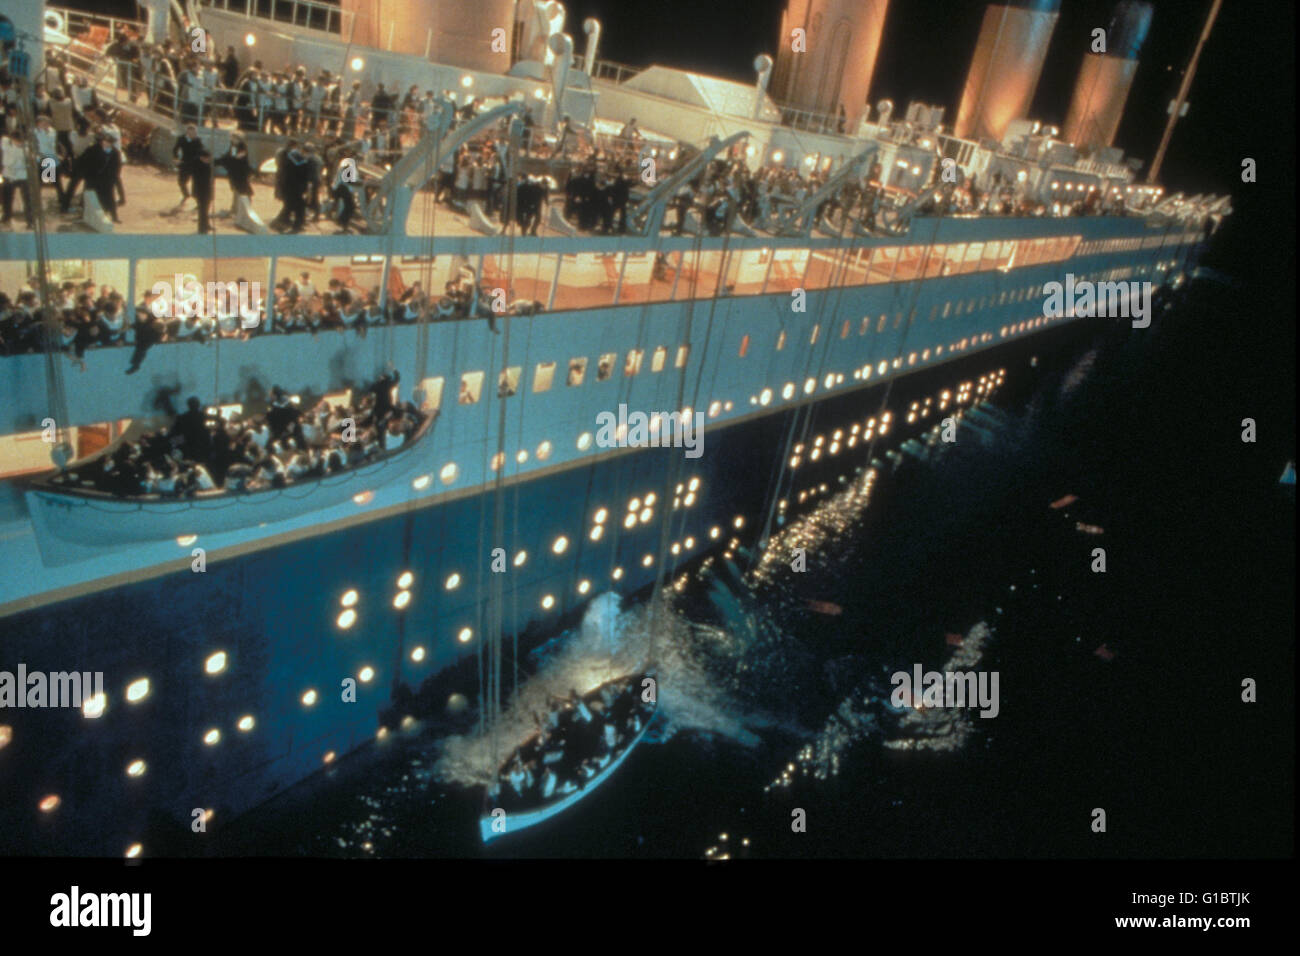 Titanic, Stock Photo